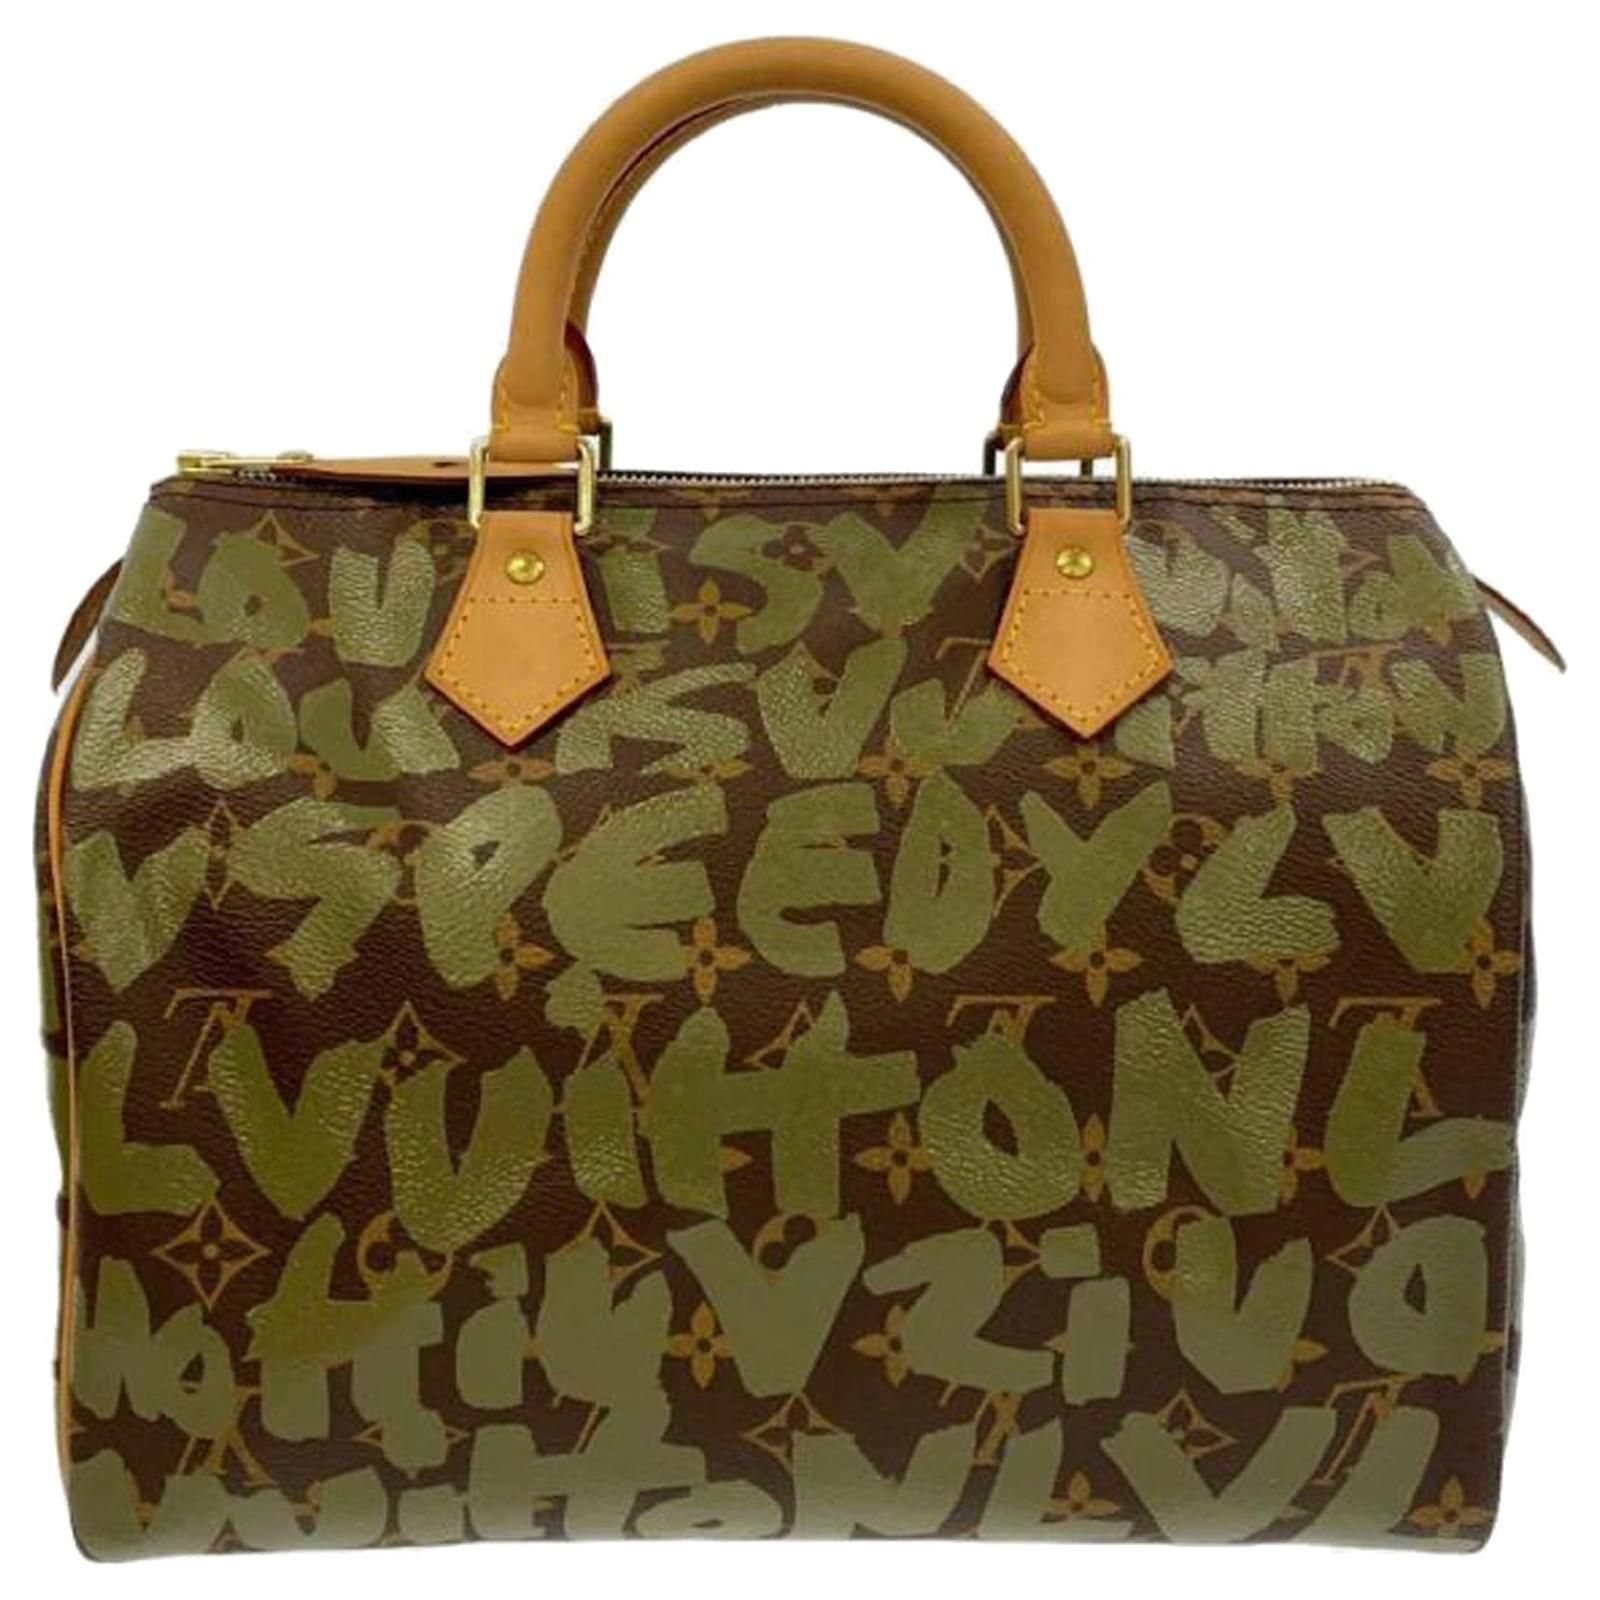 Handbags Louis Vuitton Speedy Bag Special Edition (Sprouse)